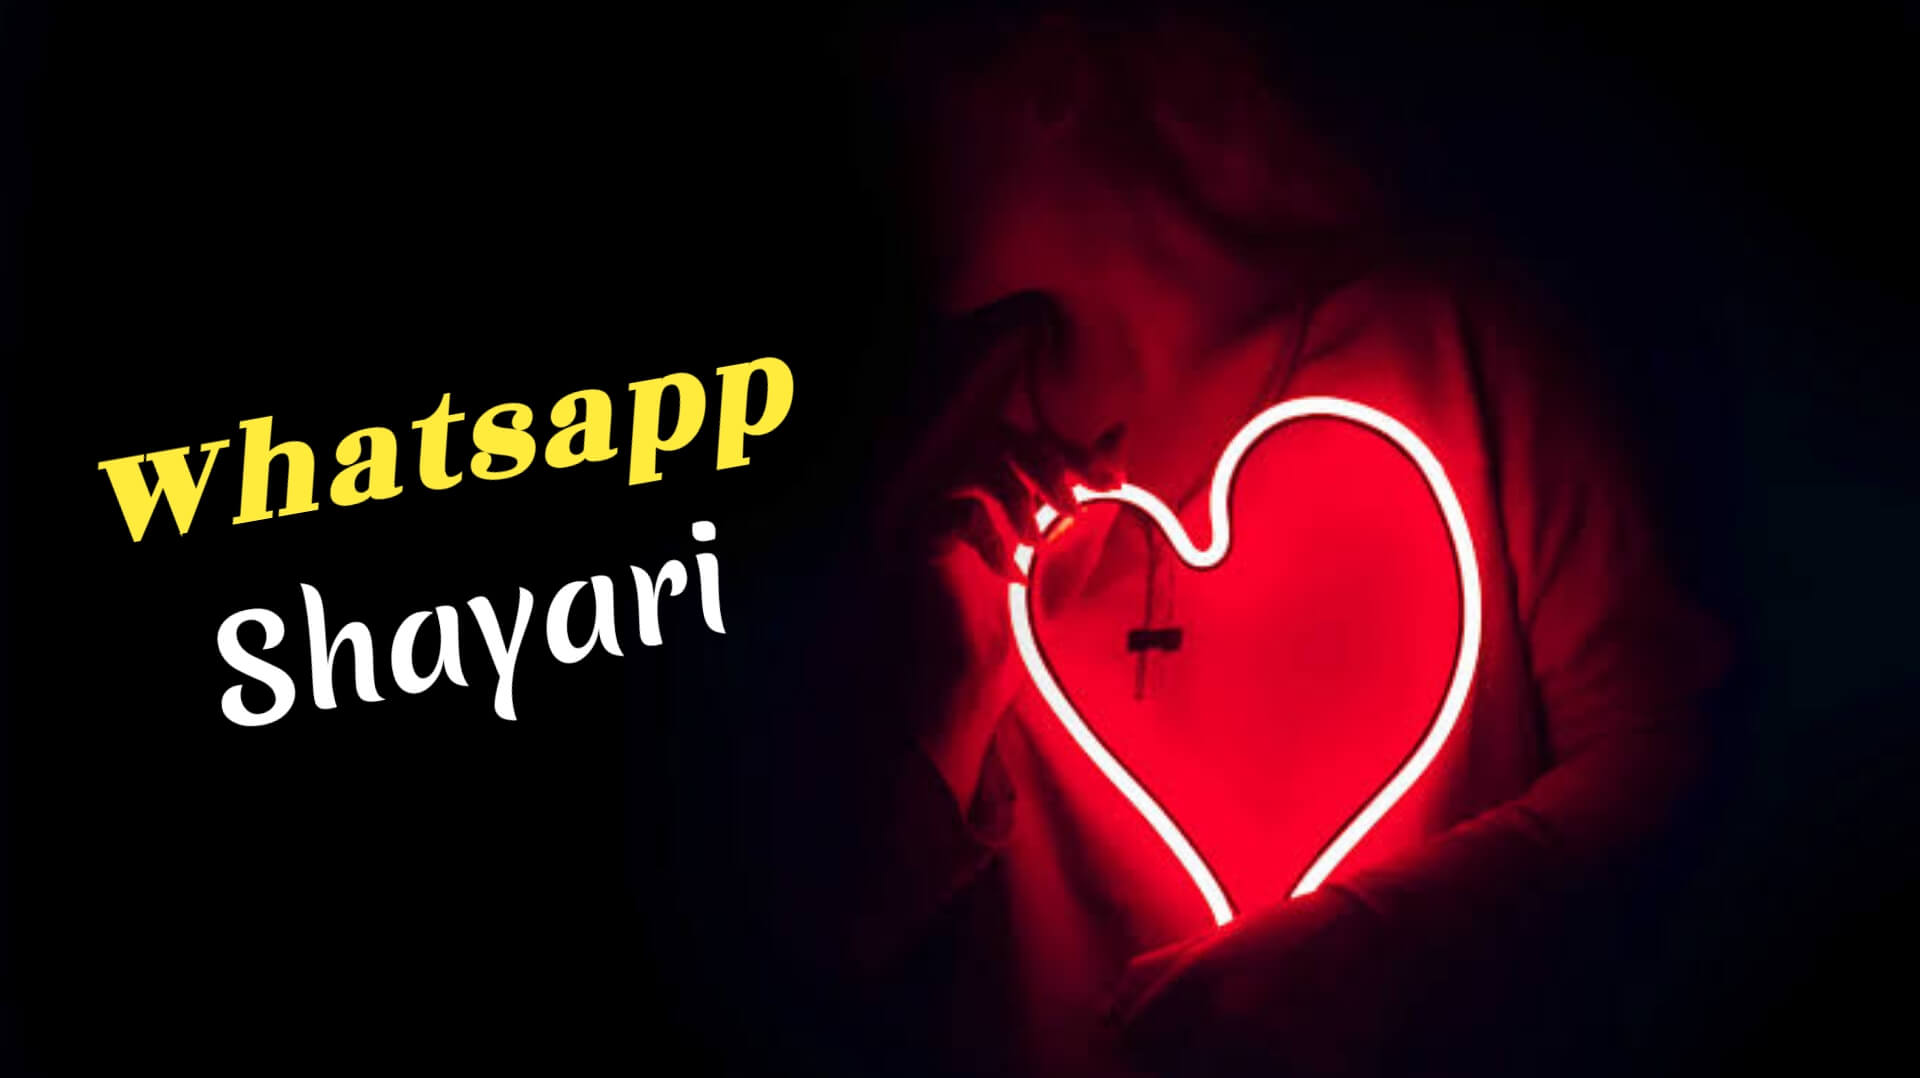 WhatsApp Shayari